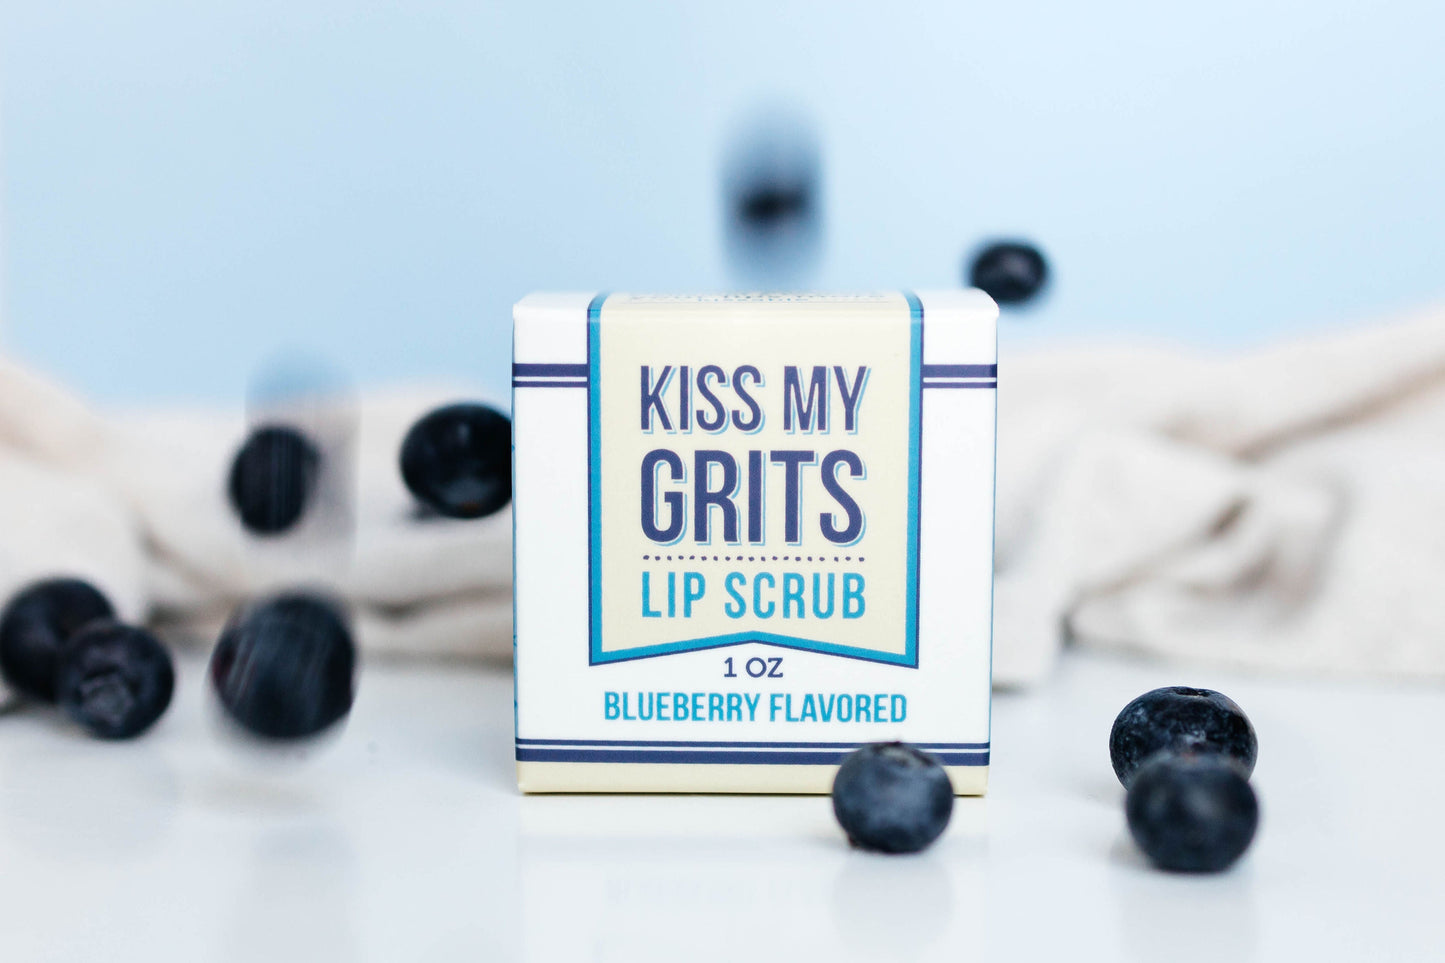 Kiss My Grits Lip Scrub by Salacia Salts